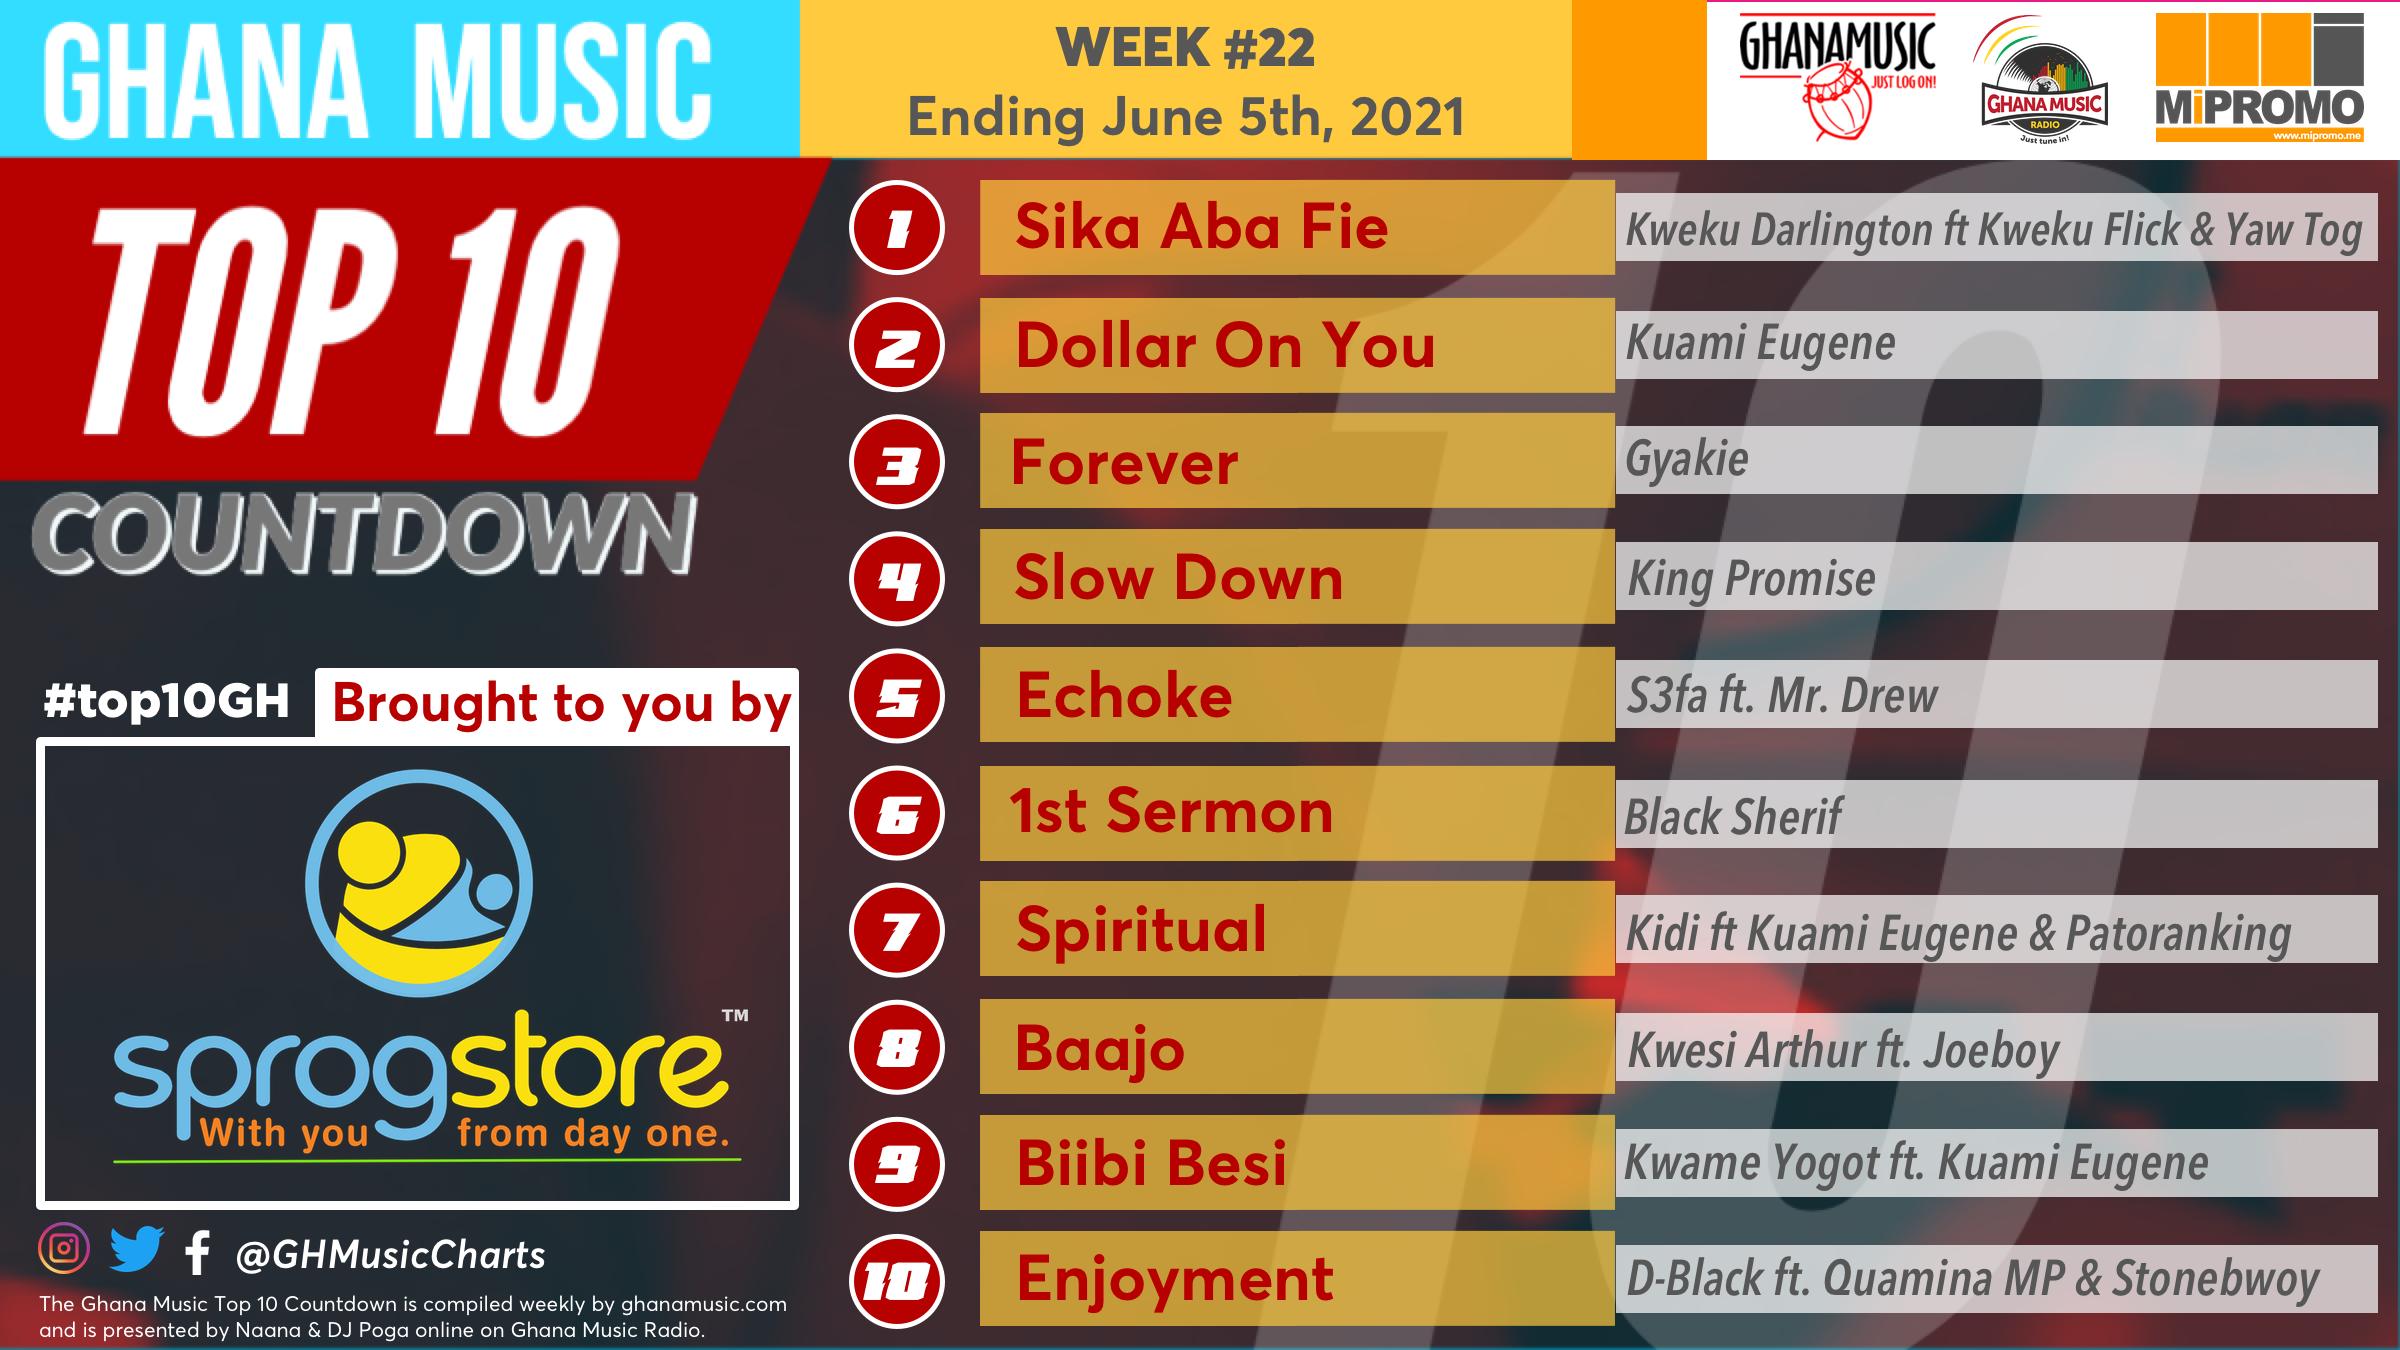 2021 Week 22: Ghana Music Top 10 Countdown